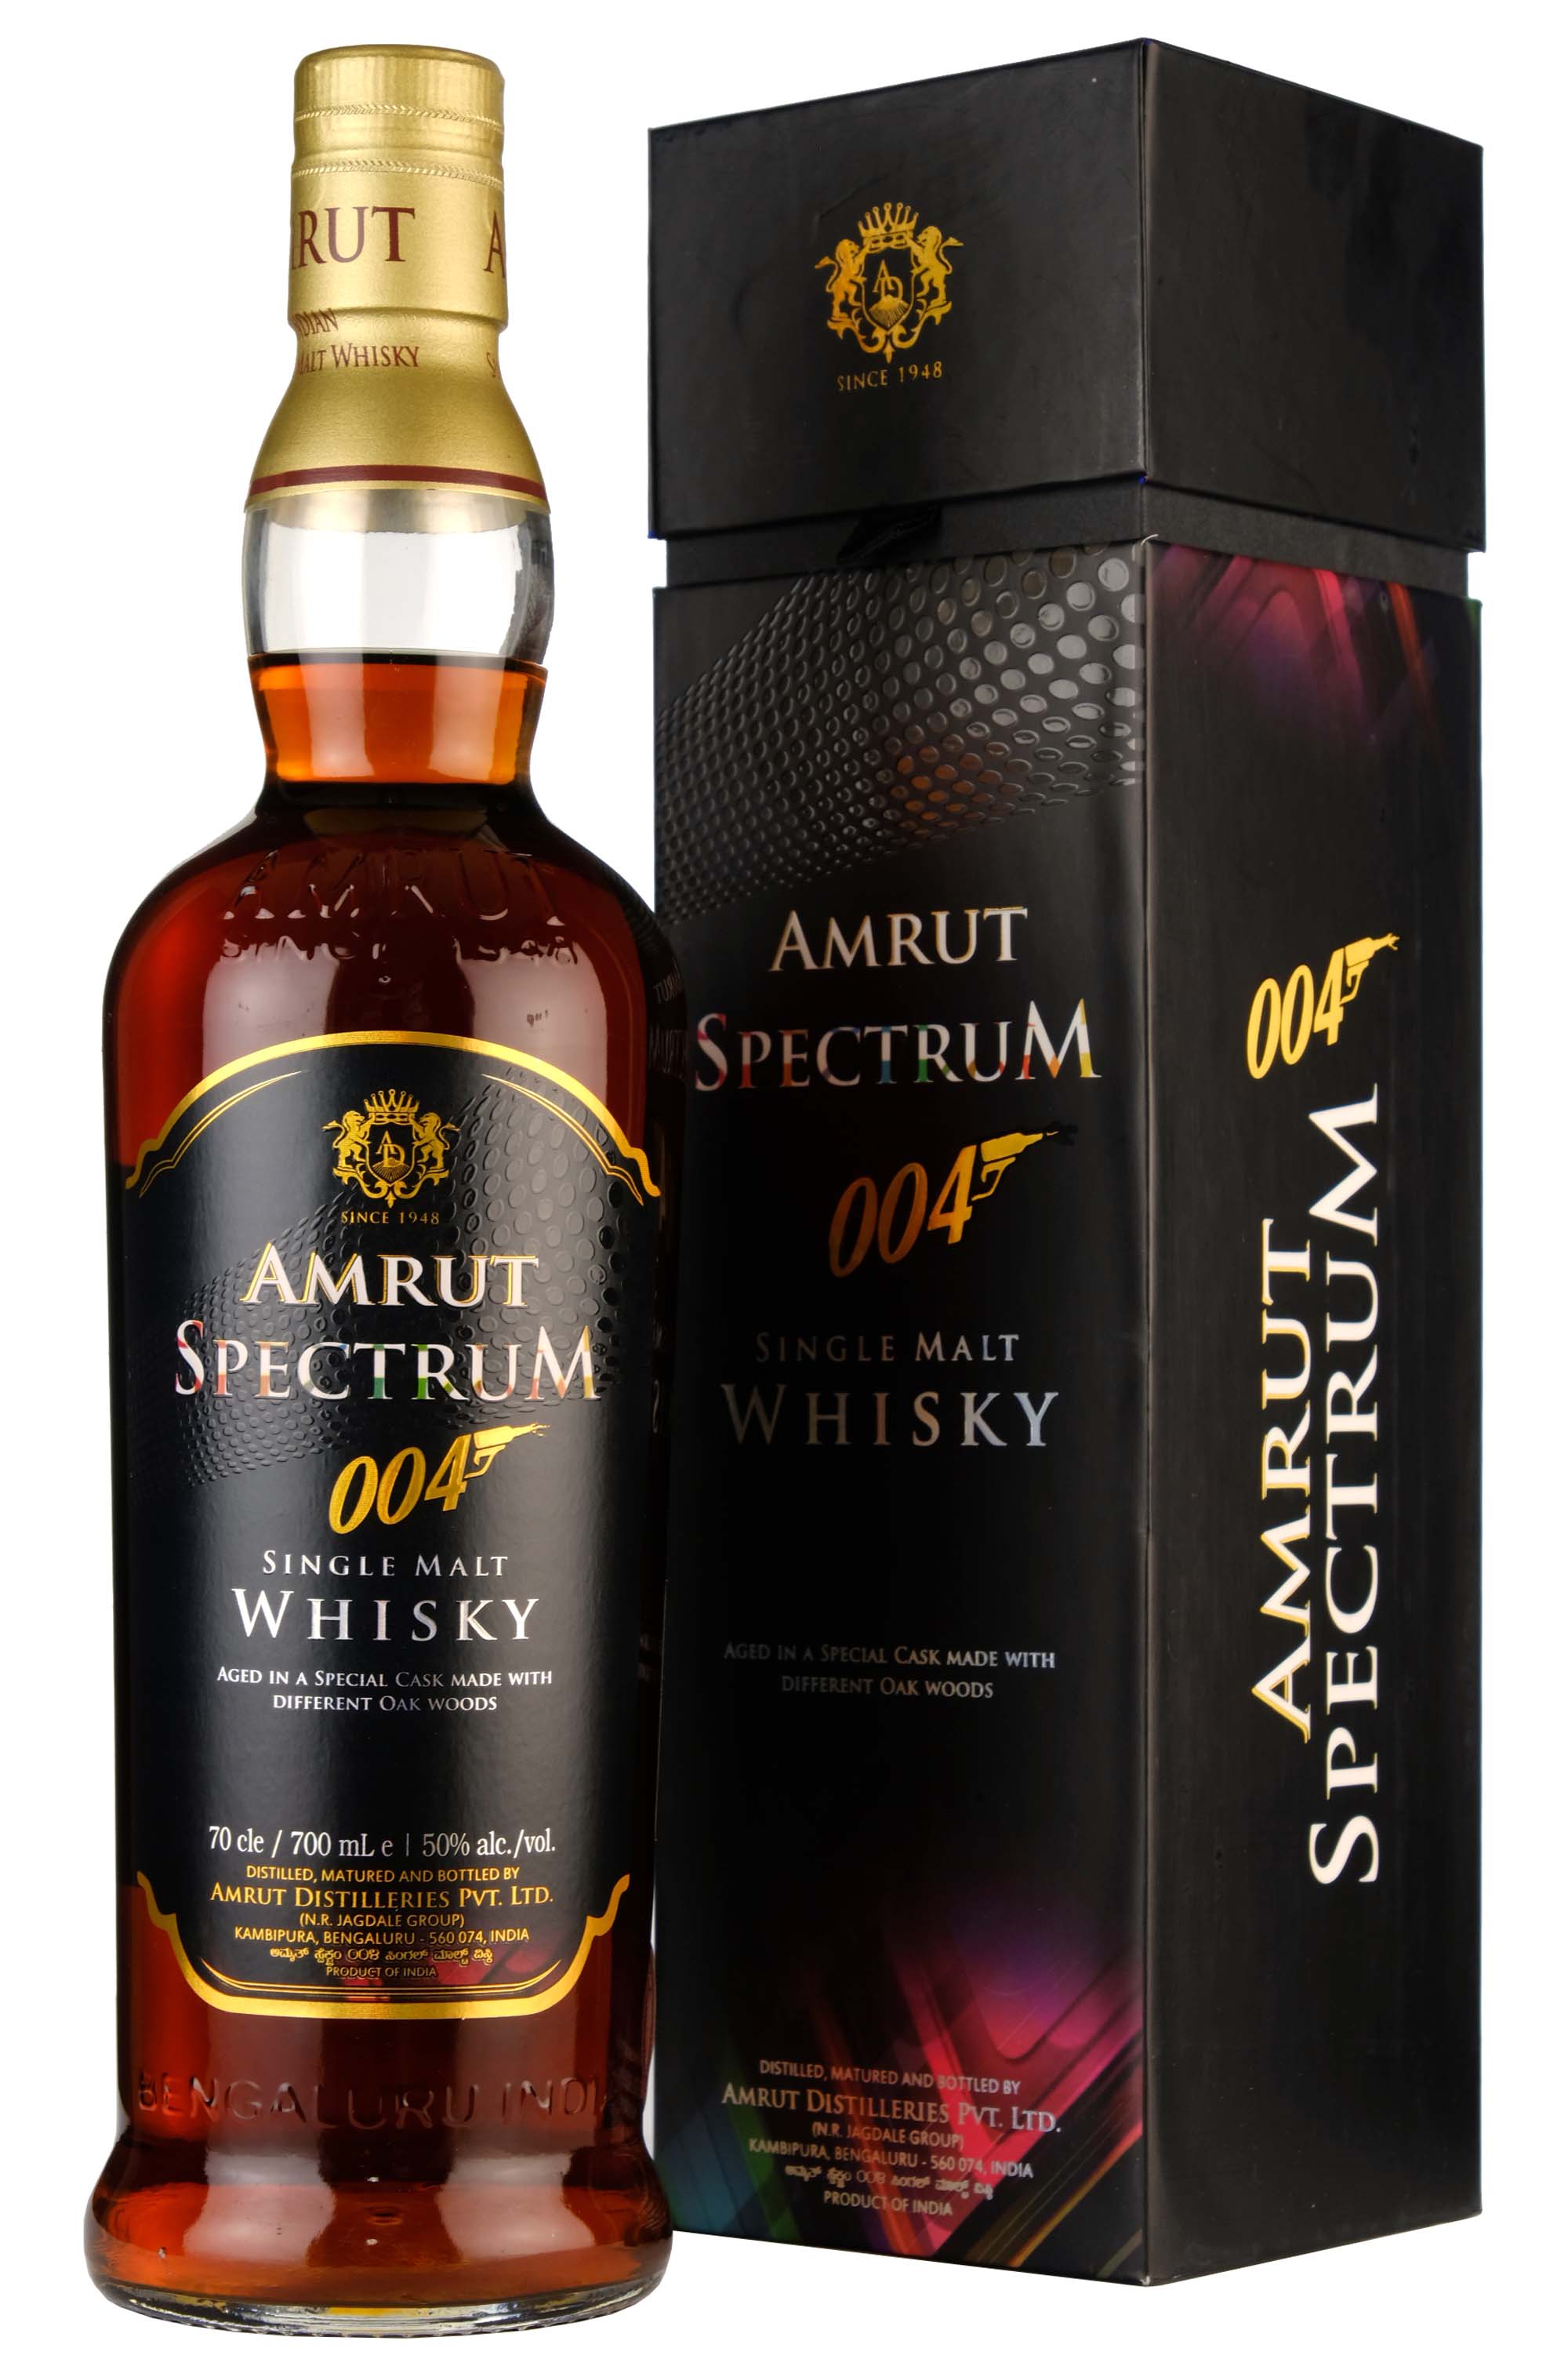 Amrut Spectrum 004 Indian Single Malt Whisky